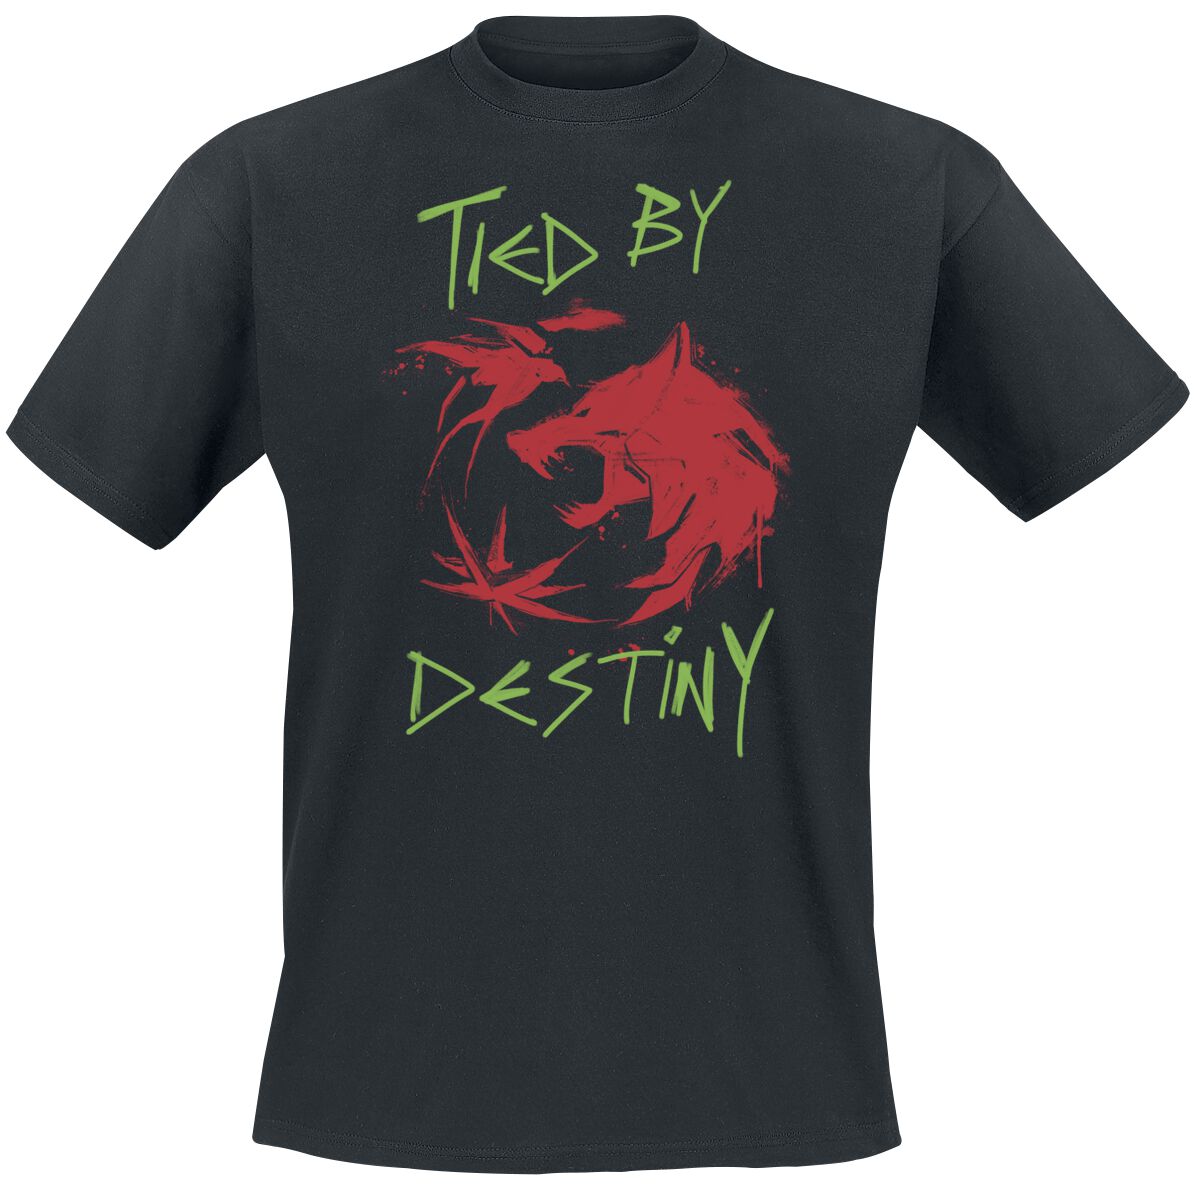 The Witcher T-Shirt - Season 3 - Destiny - S bis XXL - für Männer - Größe XXL - schwarz  - EMP exklusives Merchandise!